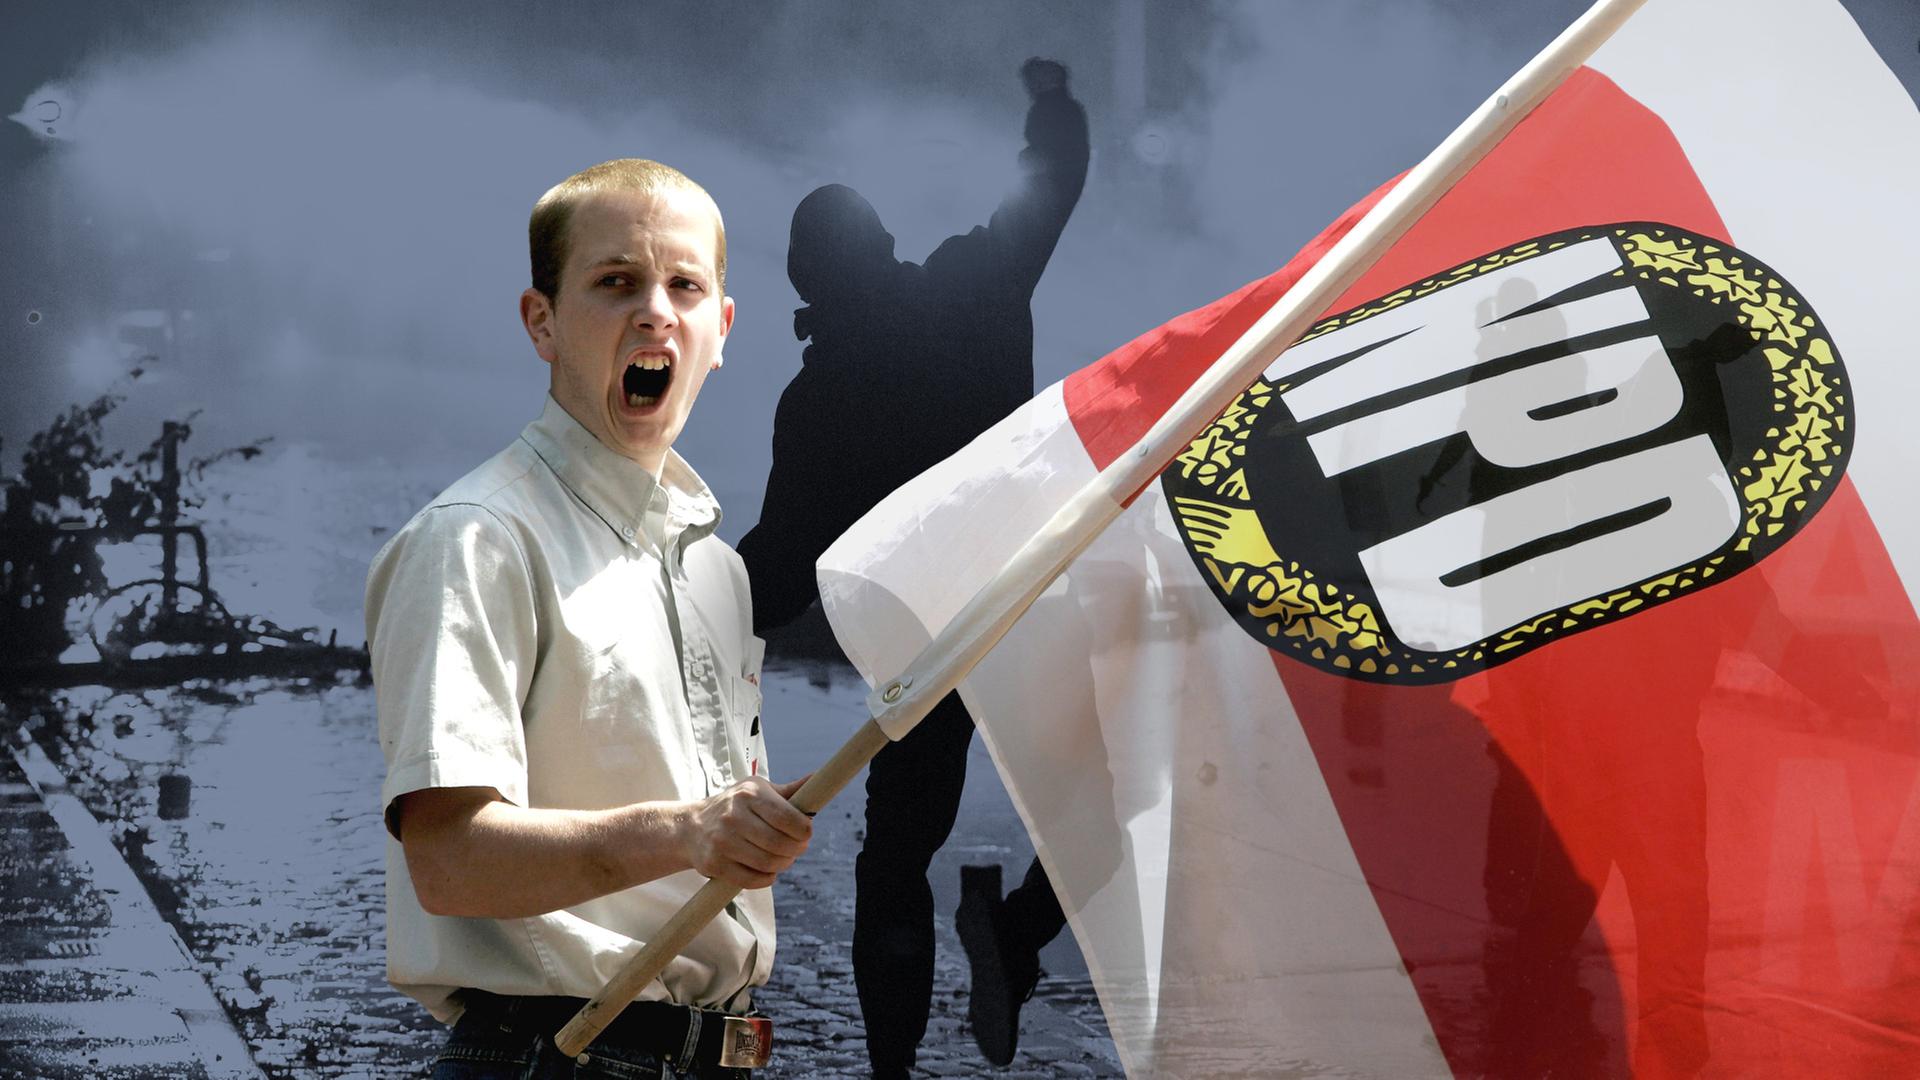 Rechter Demonstrant mit NPD-Fahne - im Hintergrund ein Steinwerfer